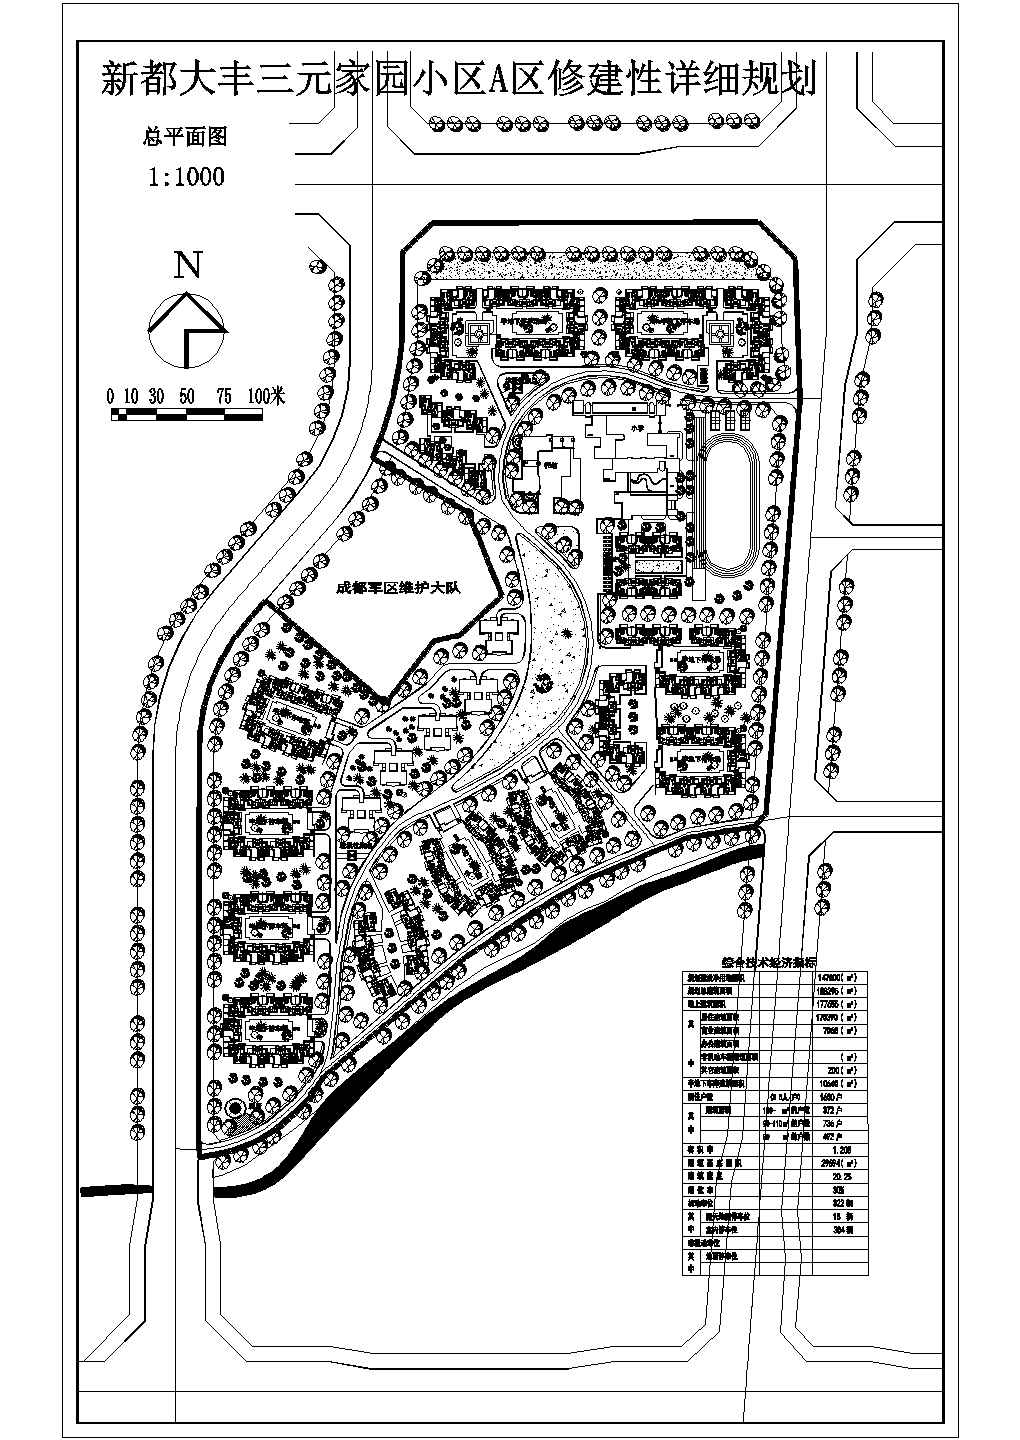 新都家园小区修建性景观详细规划图